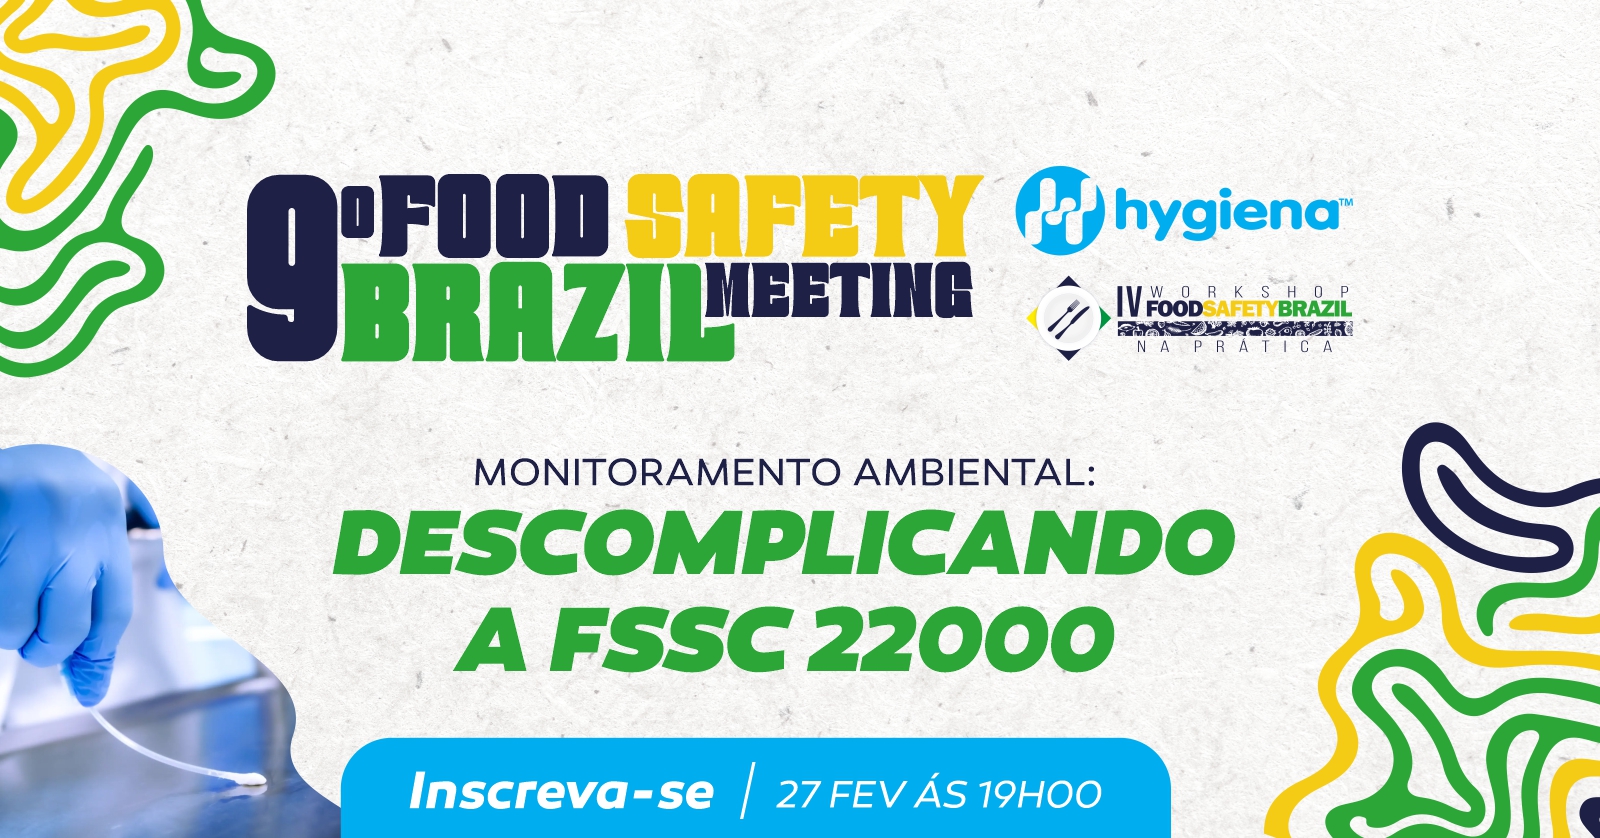 Food Safety Brazil reconhece empresas que investem em segurança dos  alimentos - Food Safety Brazil